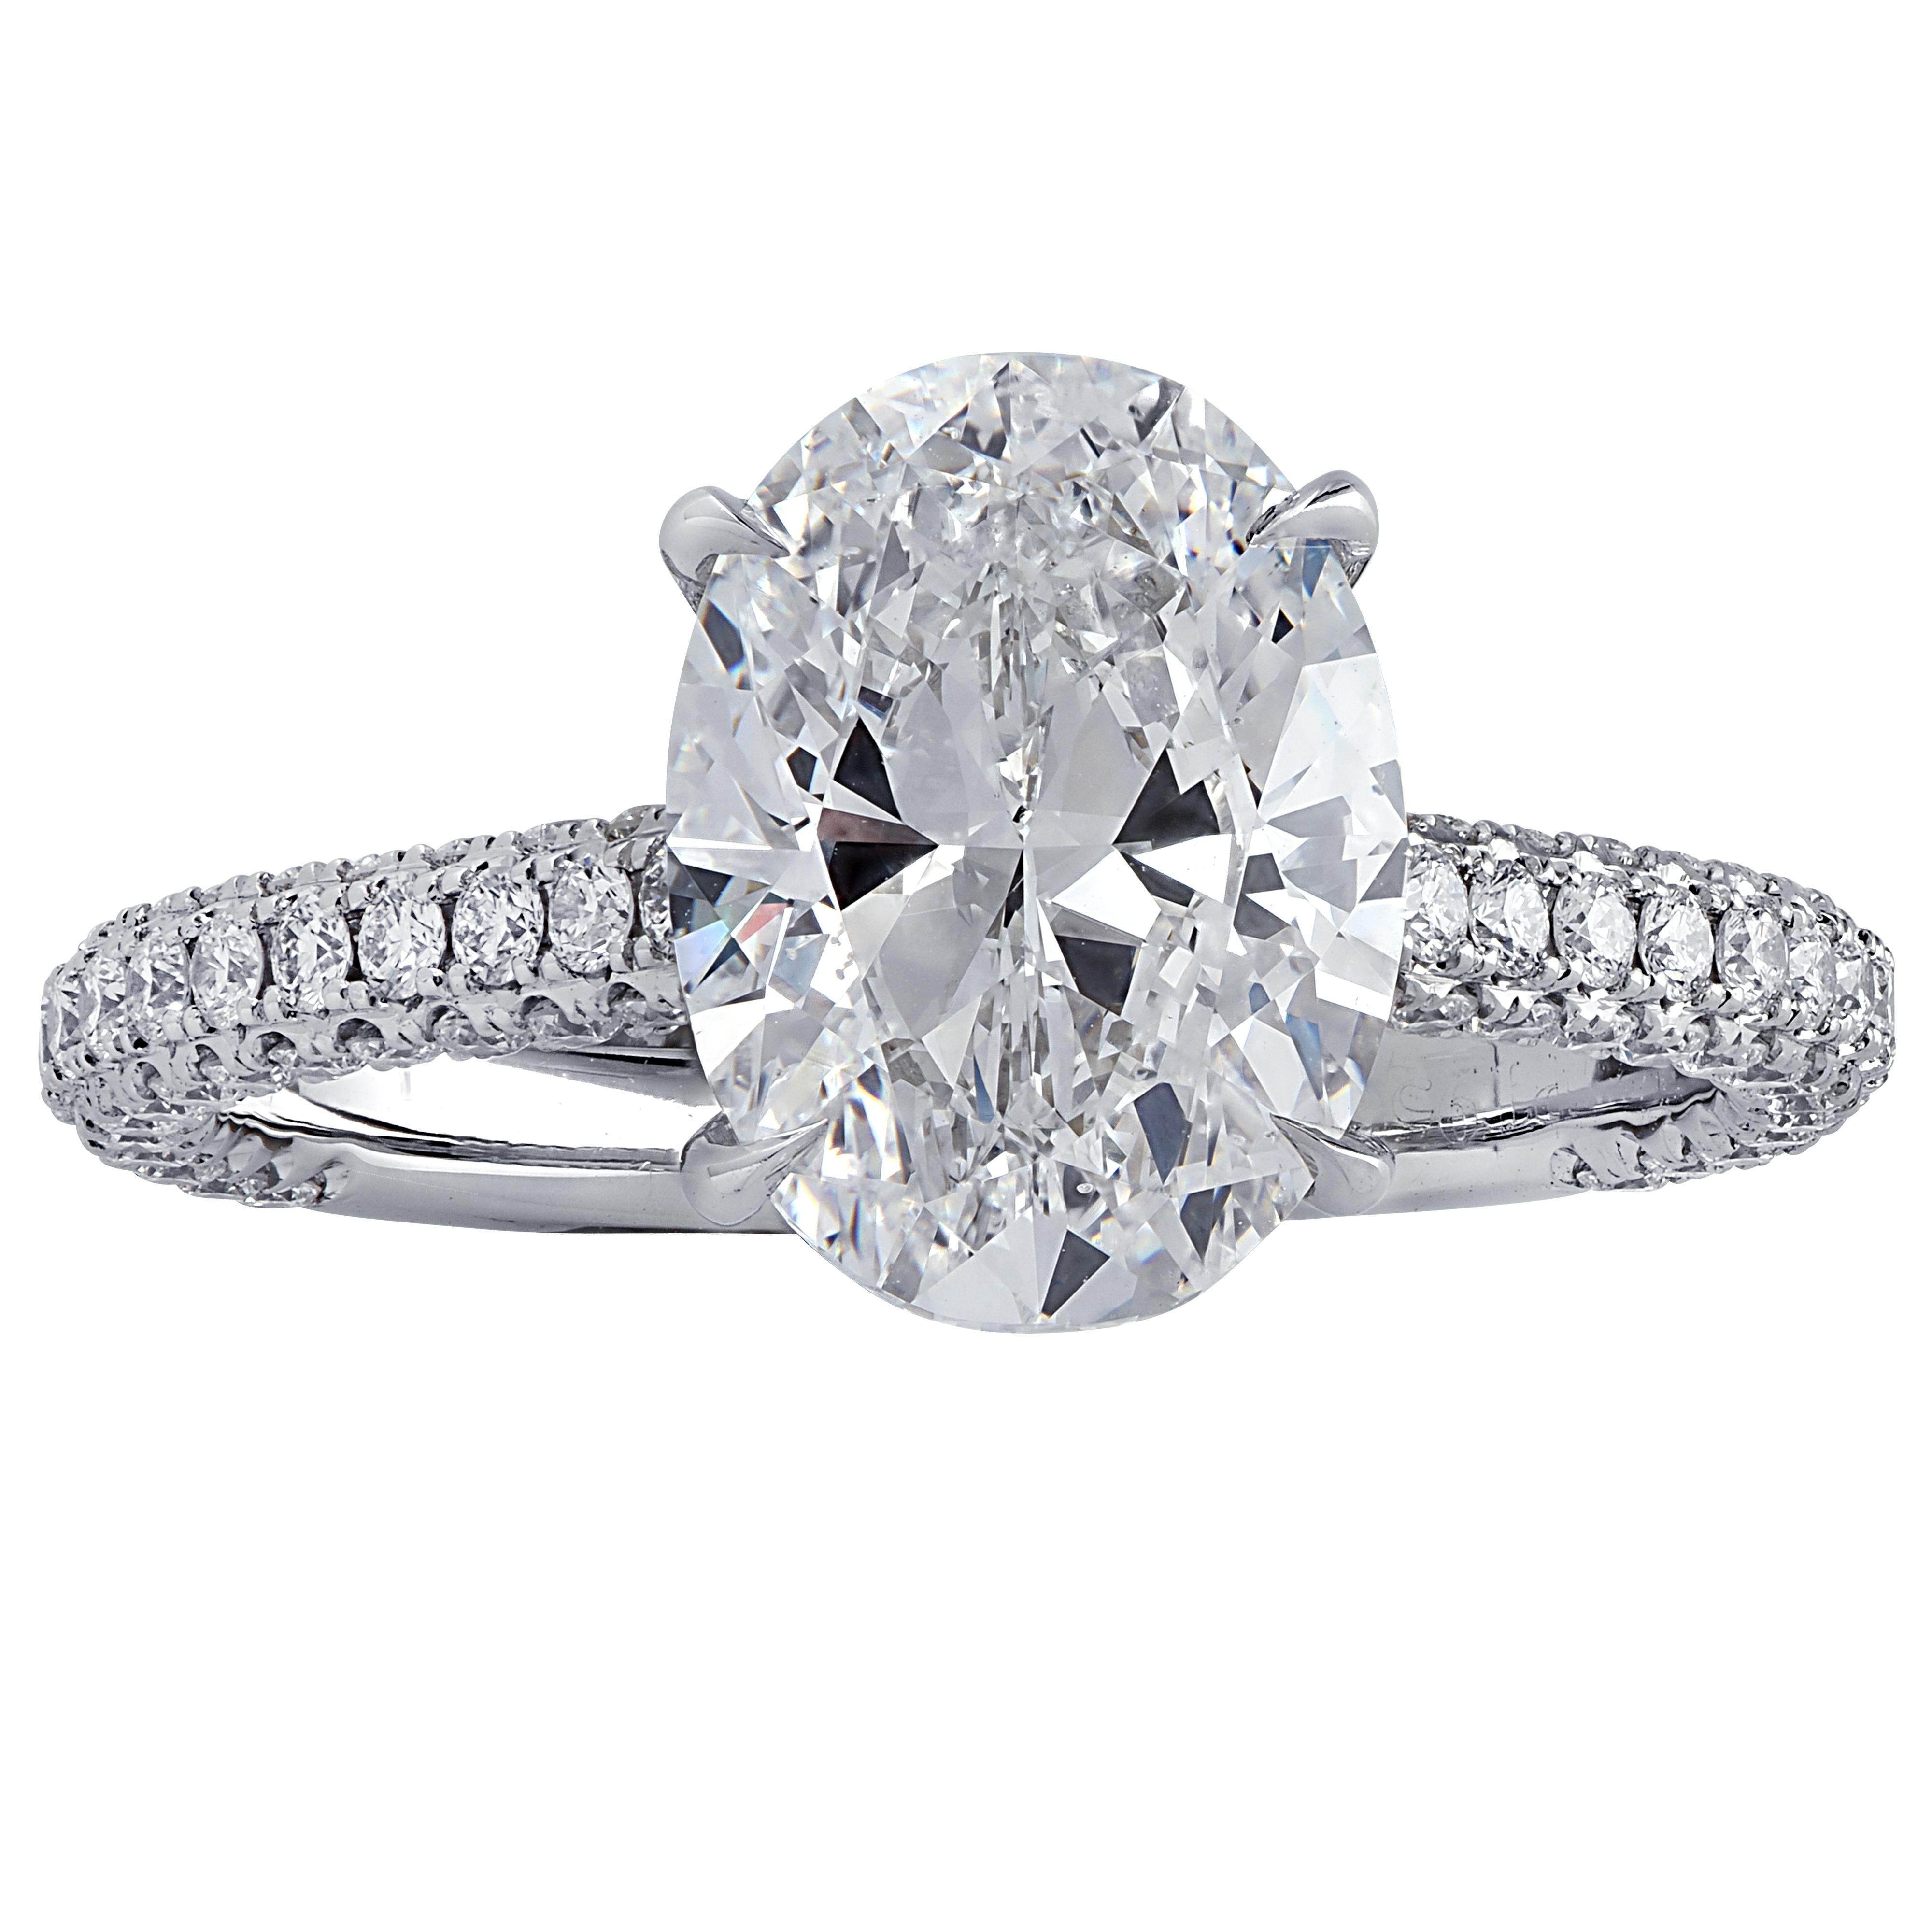 Modern Vivid Diamonds GIA Certified 3.02 Carat Diamond Engagement Ring